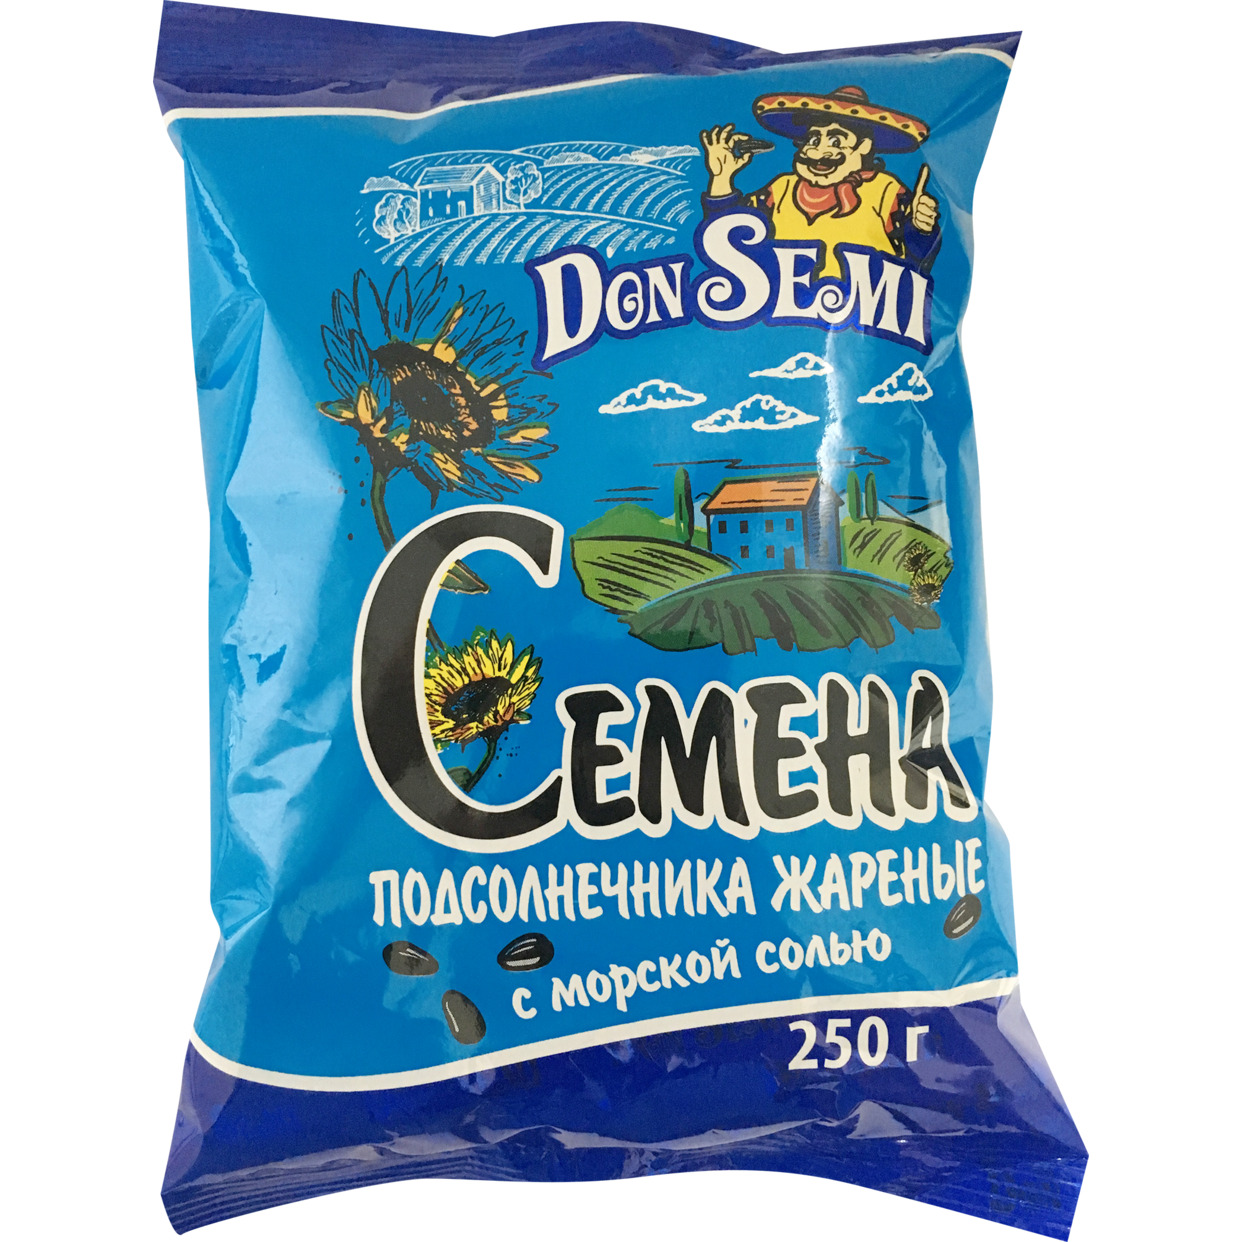 Don’ Semi Семена подсолнечника жареные с морской солью (флоу-пак) 250 г